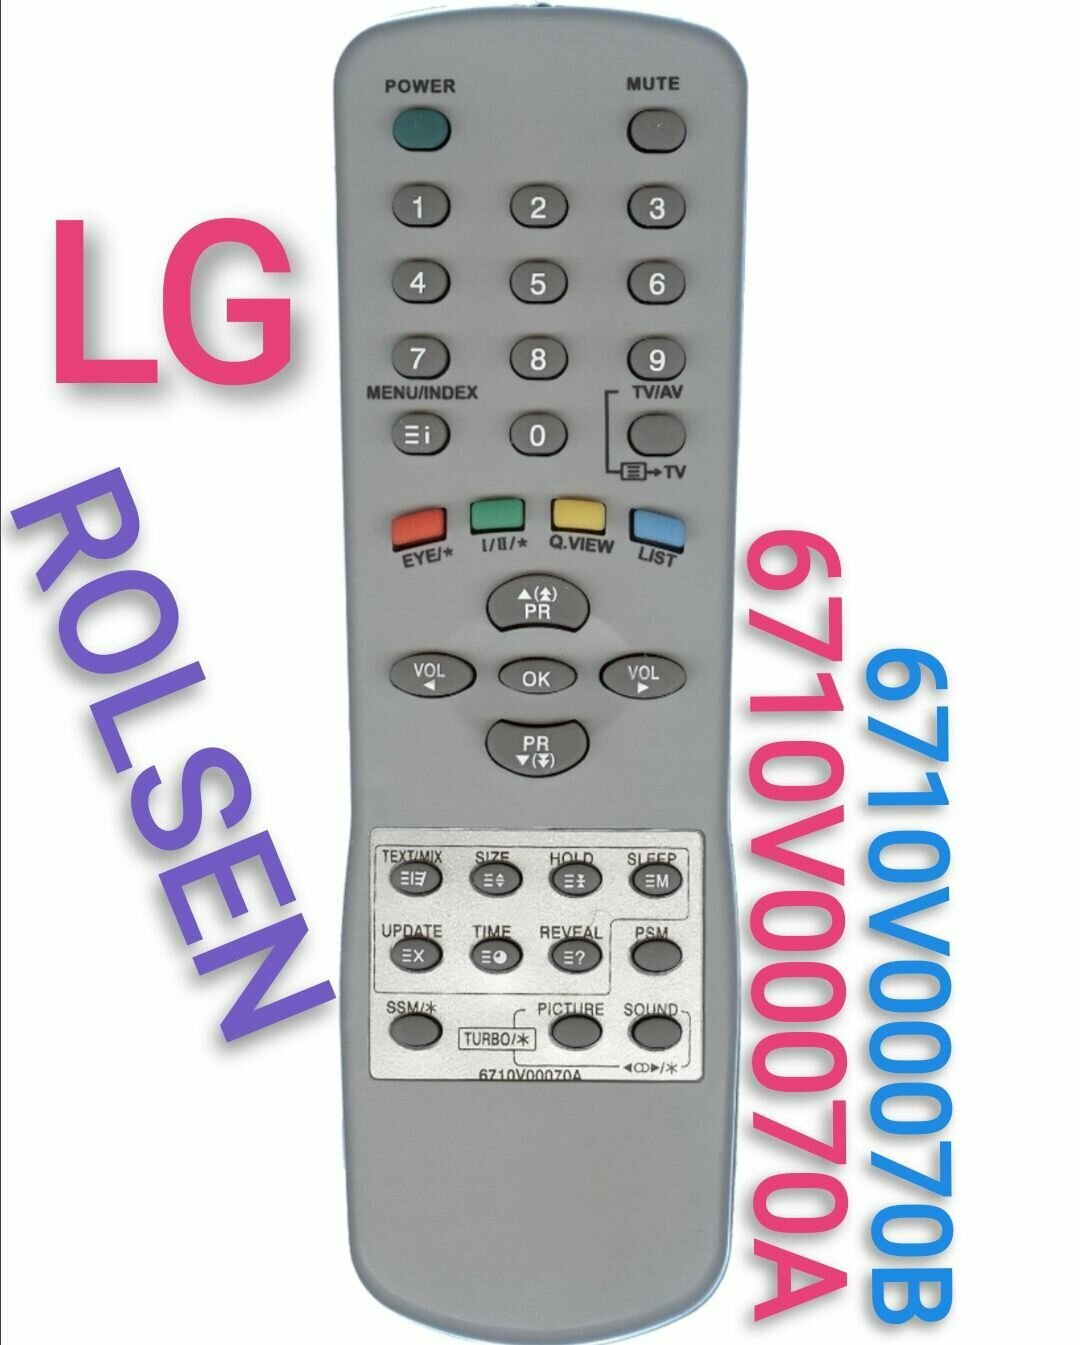 Пульт 6710V00070а для LG/Эл-джи И ROLSEN телевизорa/6710V00070B